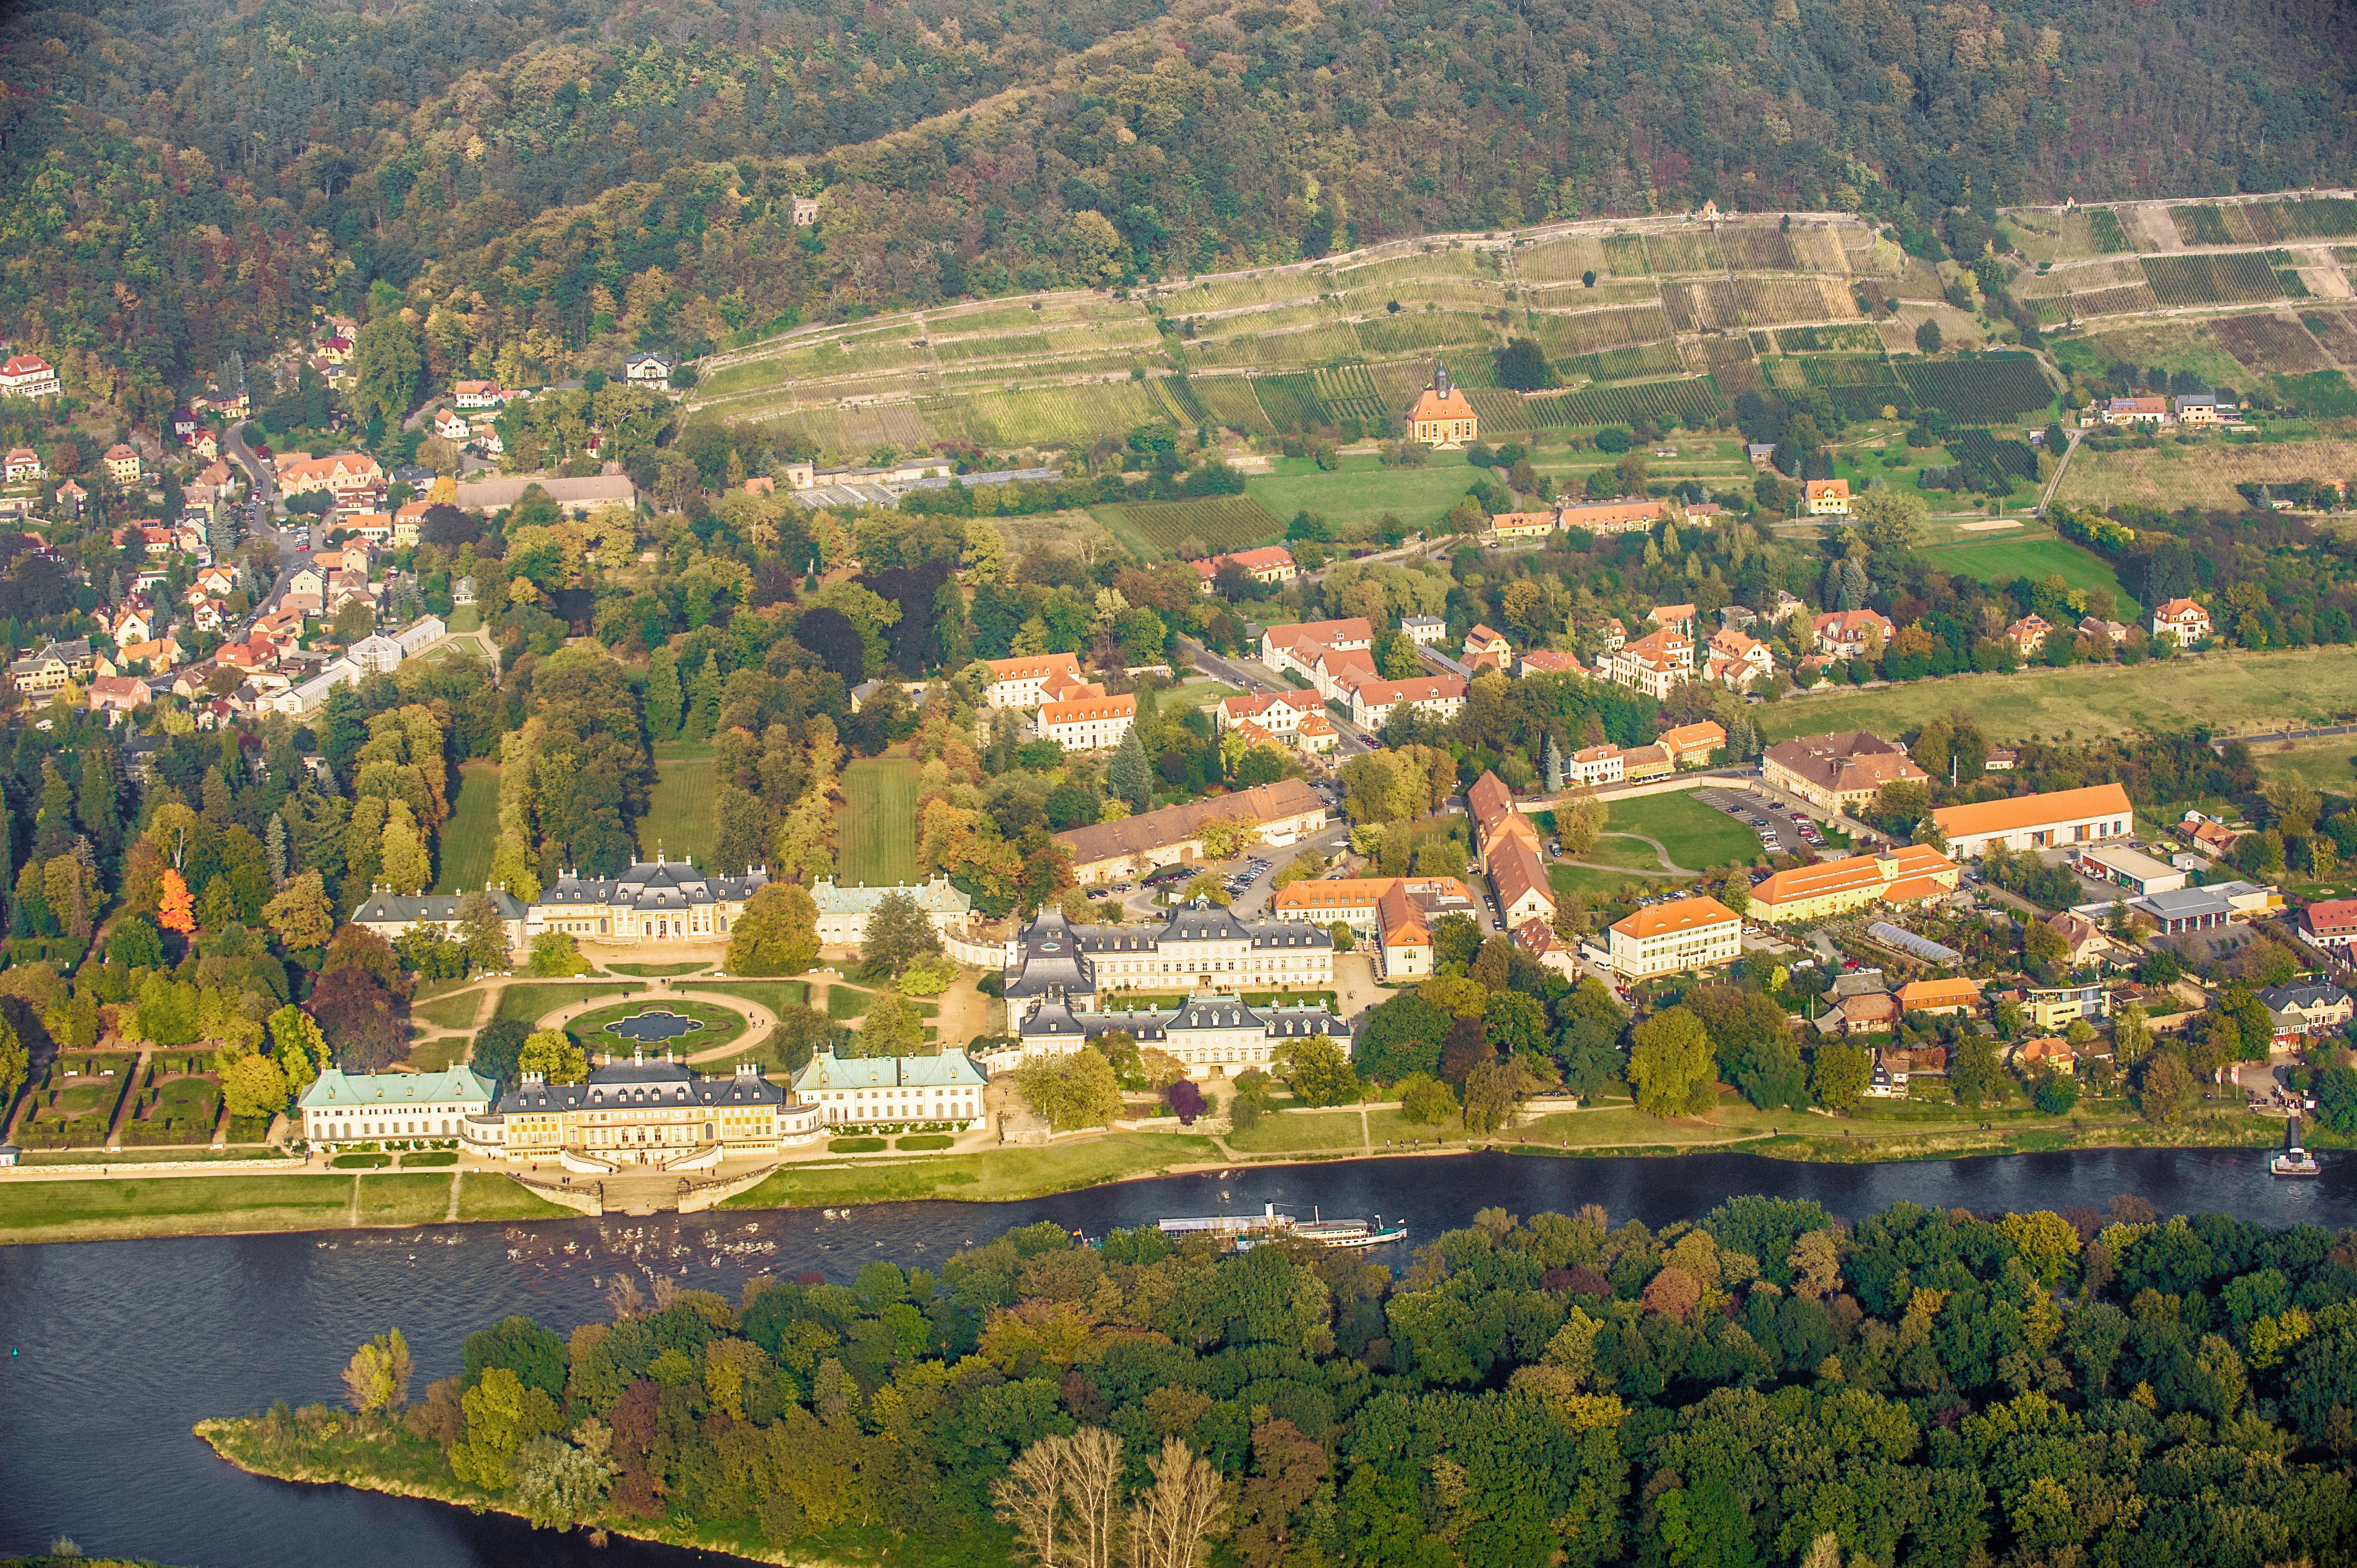 Luftaufnahme von Pillnitz, Schlosspark, Elbe, HTW-Gebäude, Wohnhäuser, Weinberg, Wald und Wiesen.